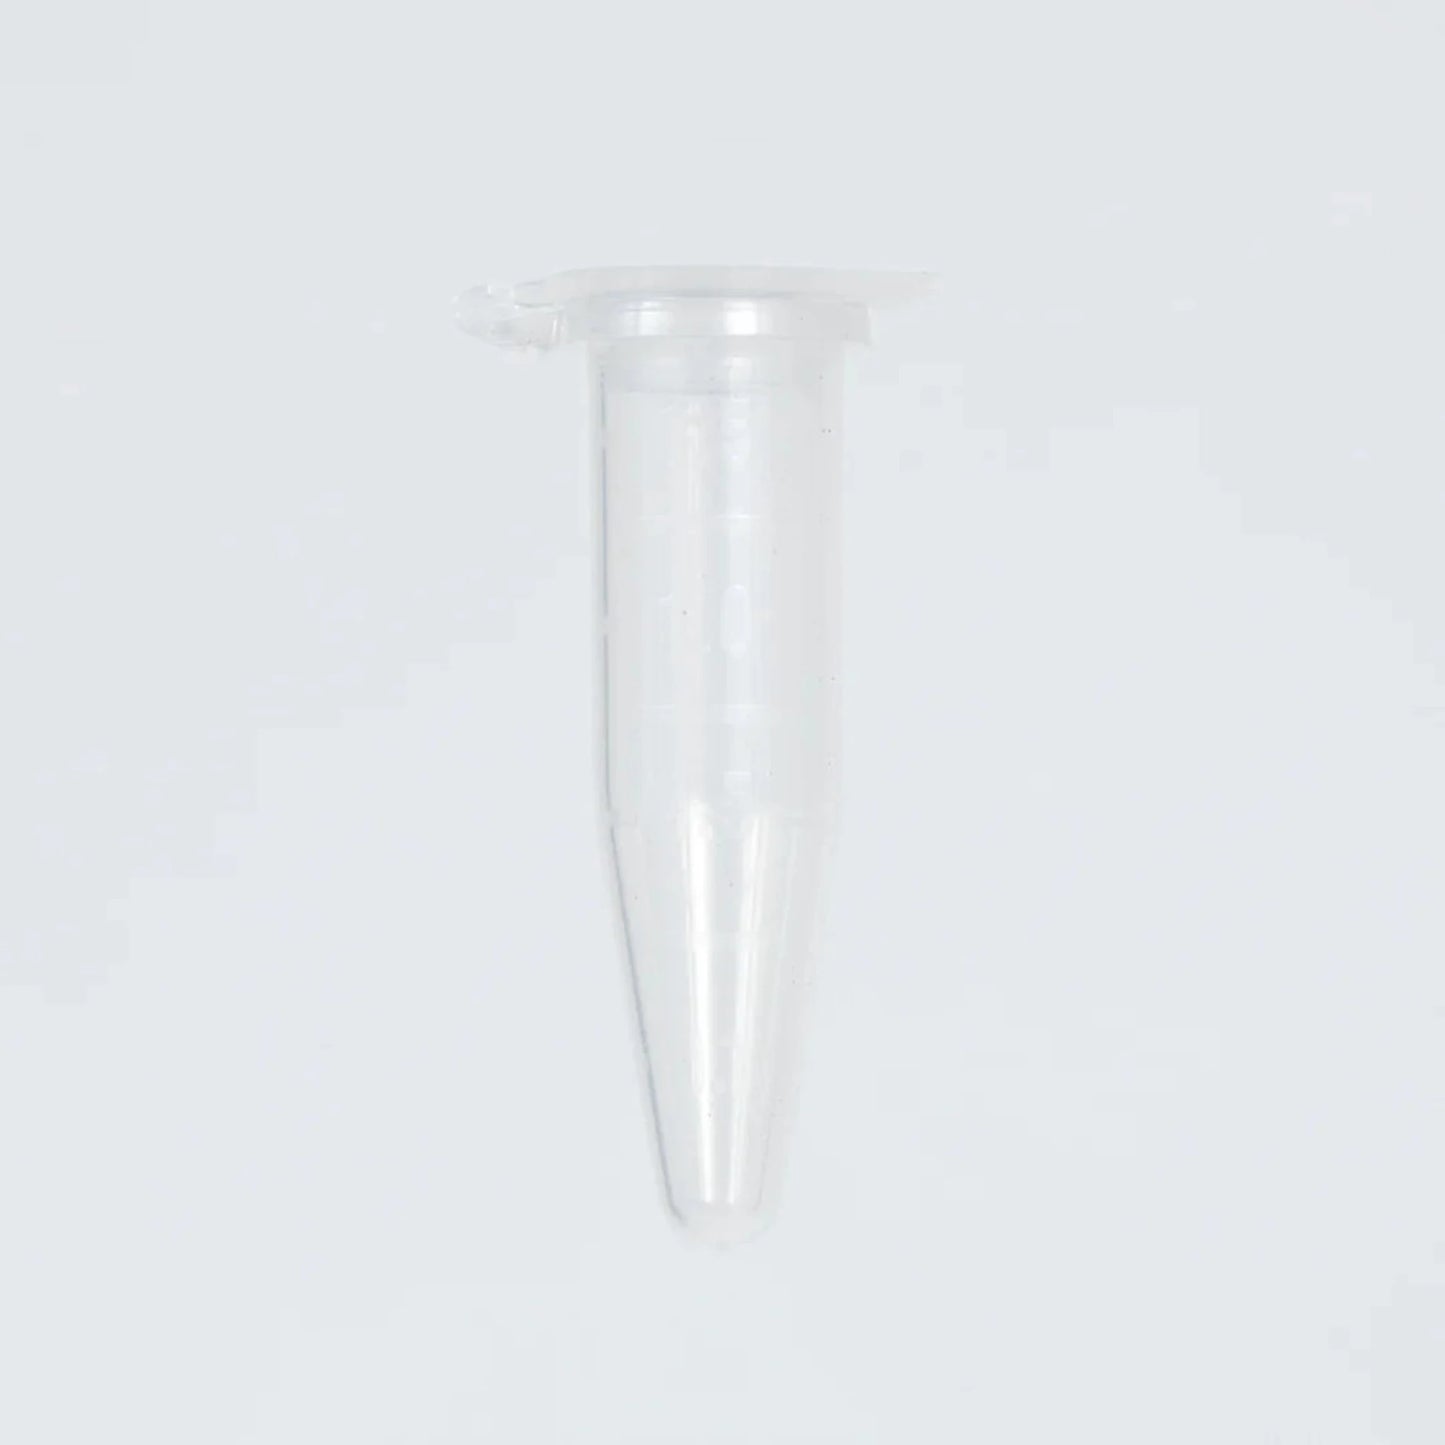 1.5ml microcentrifuge tube